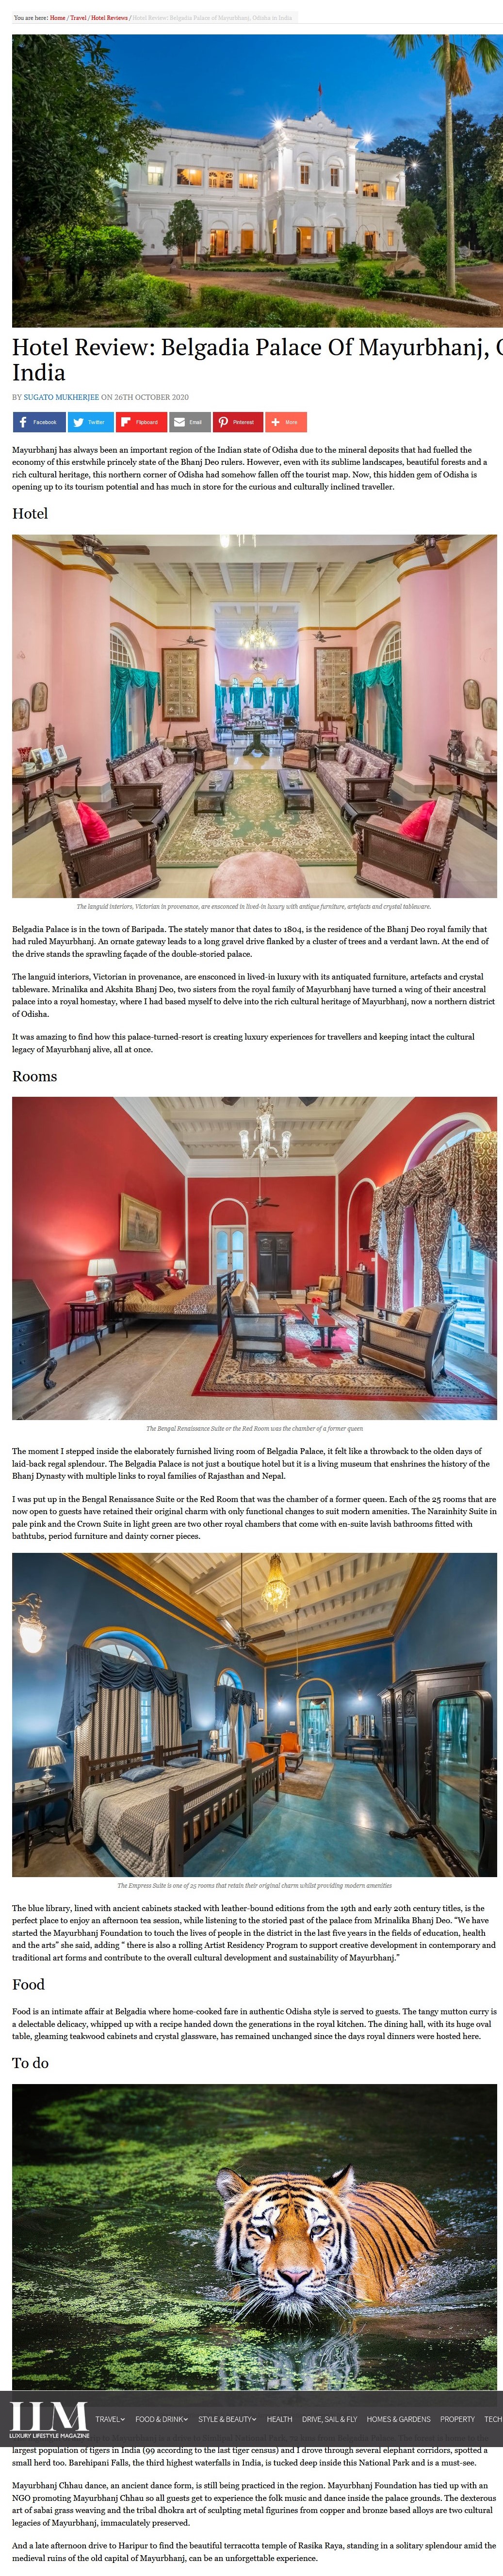 Luxury Lifestyle Magazine- Belgadia Palace of Mayurbhanj